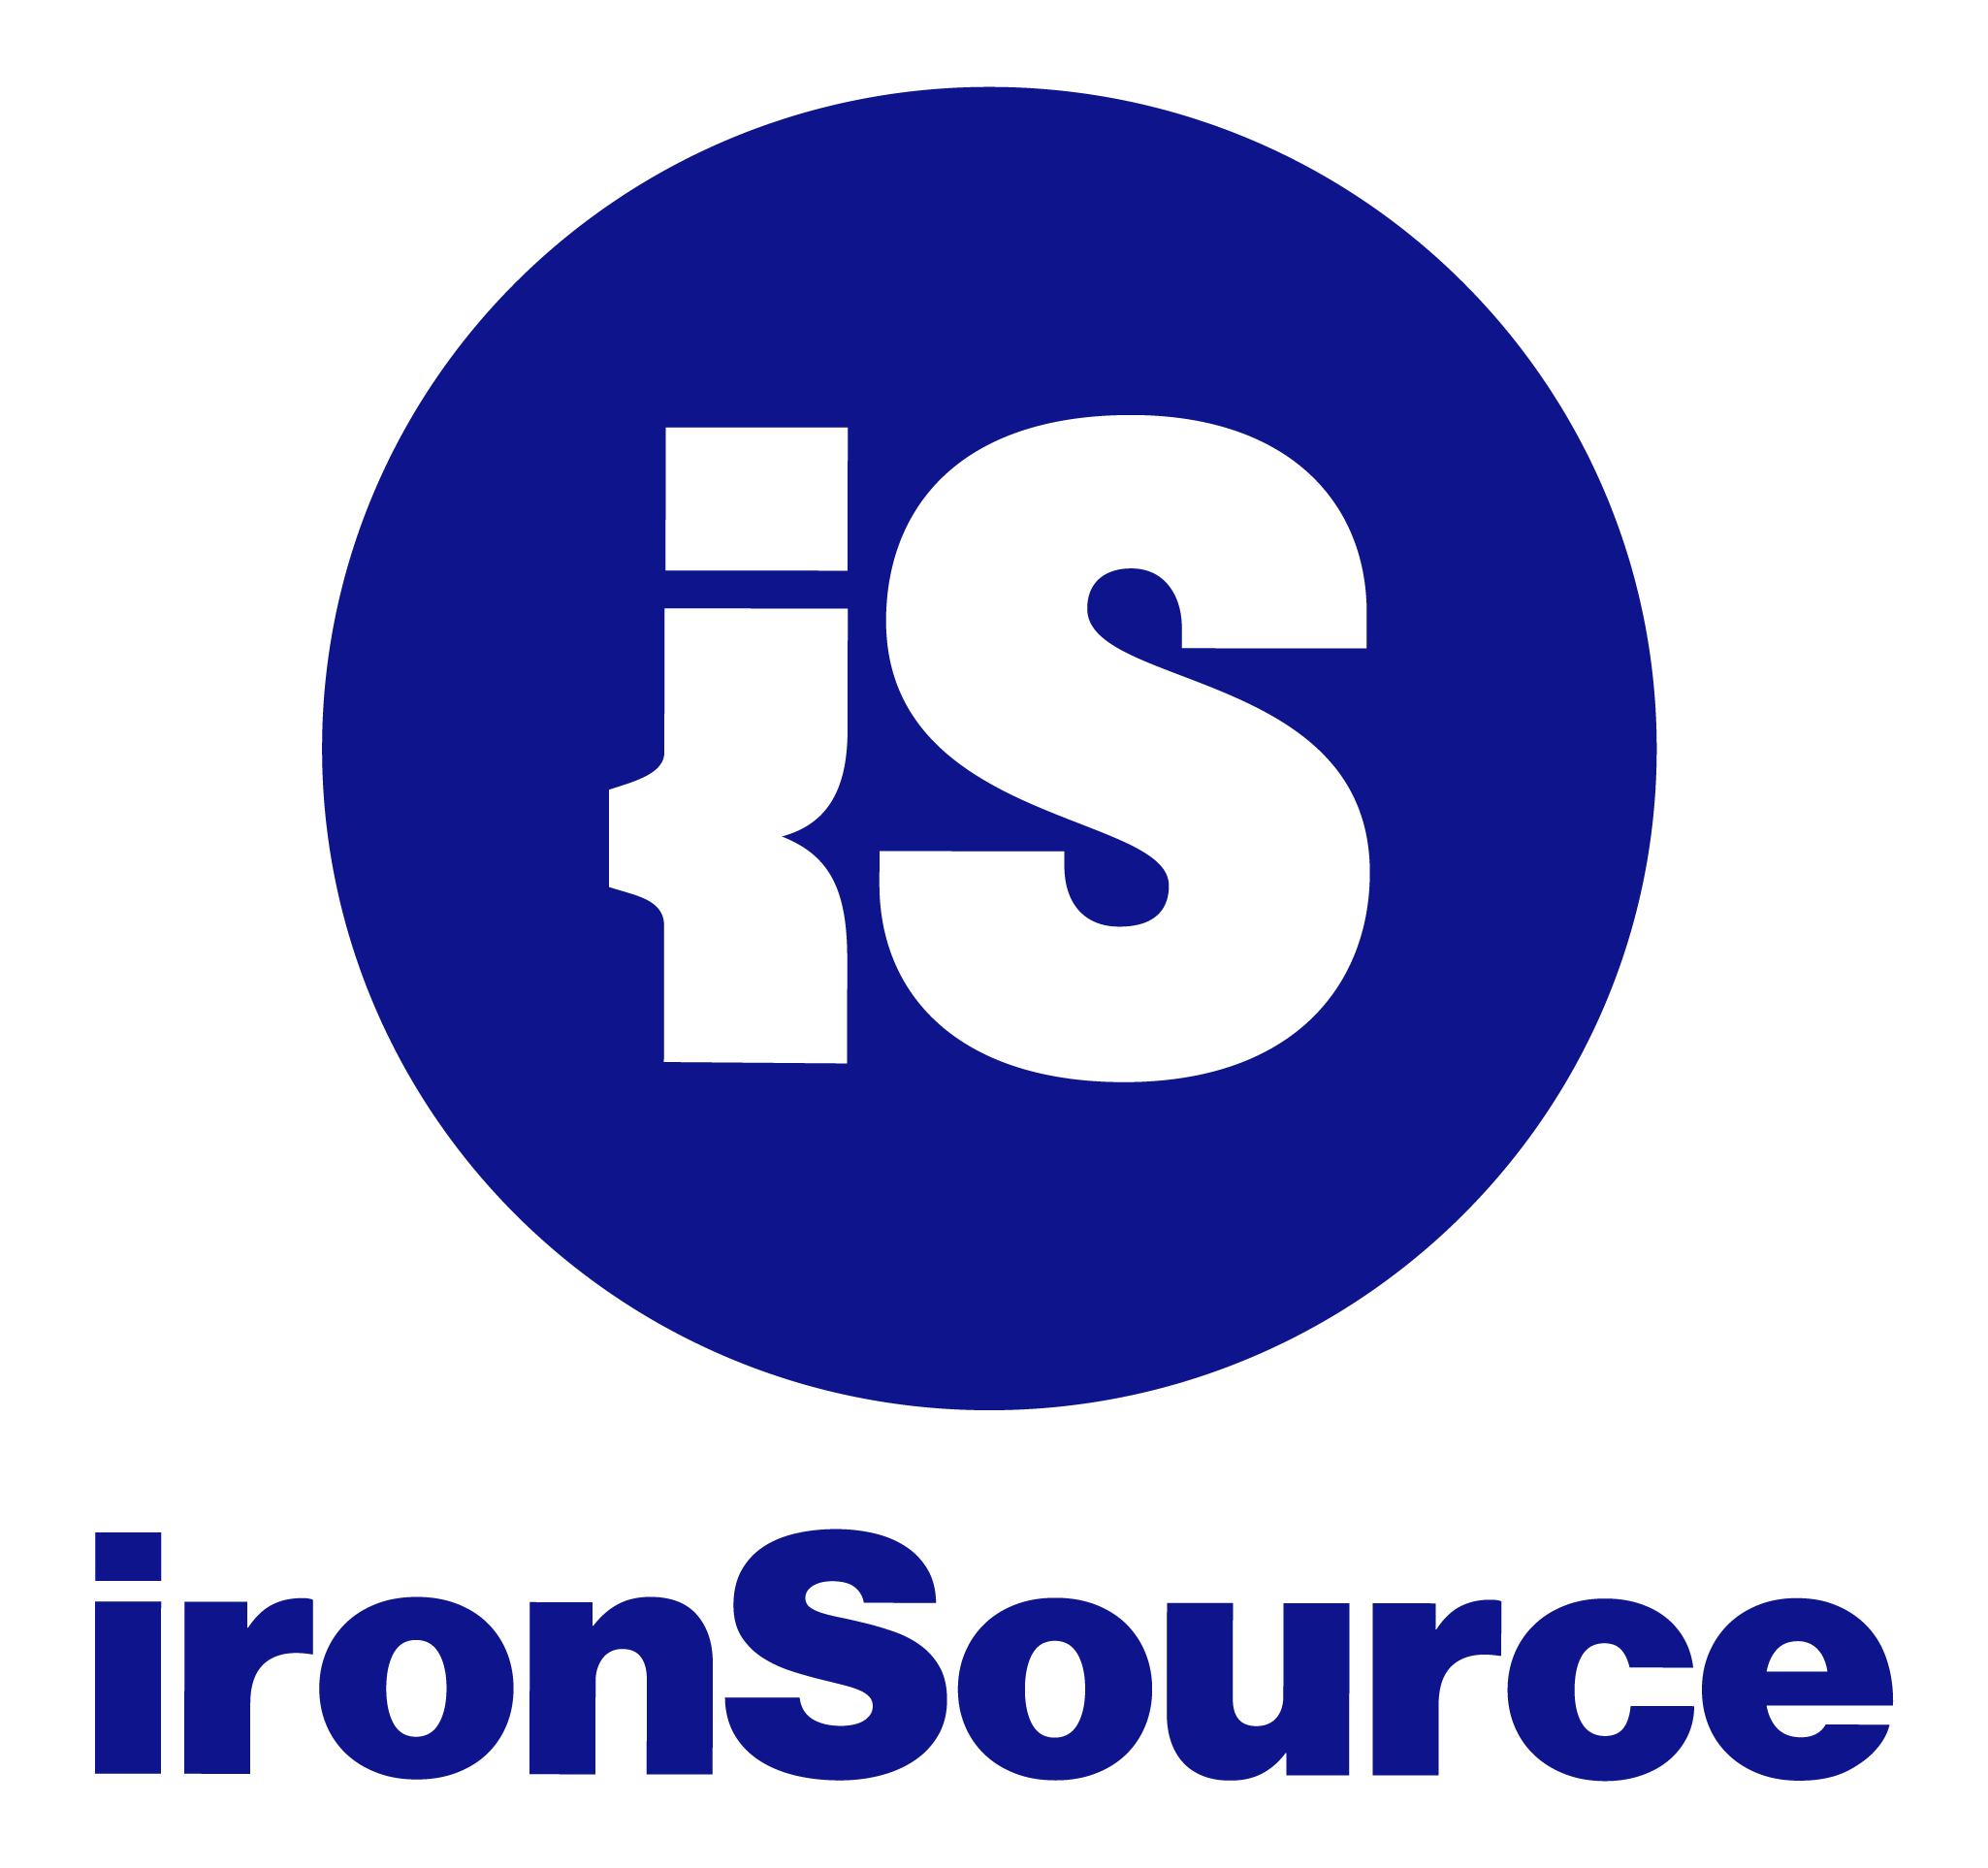 ironSource